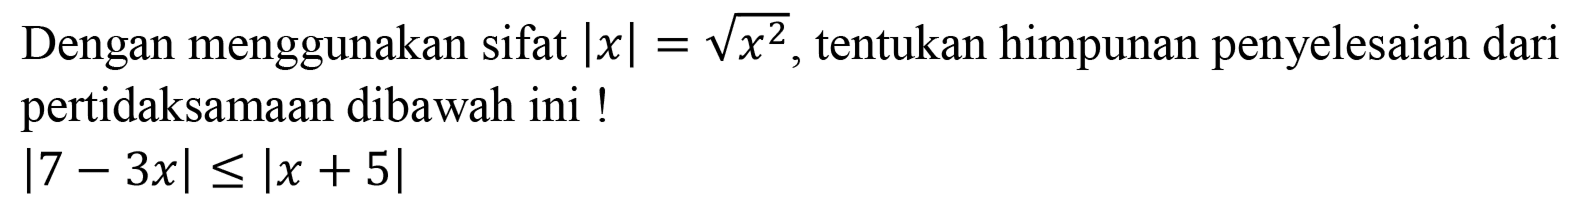 Dengan menggunakan sifat |x| = akar(x^2), tentukan himpunan penyelesaian dari pertidaksamaan dibawah ini ! |7-3x|<=|x+5|